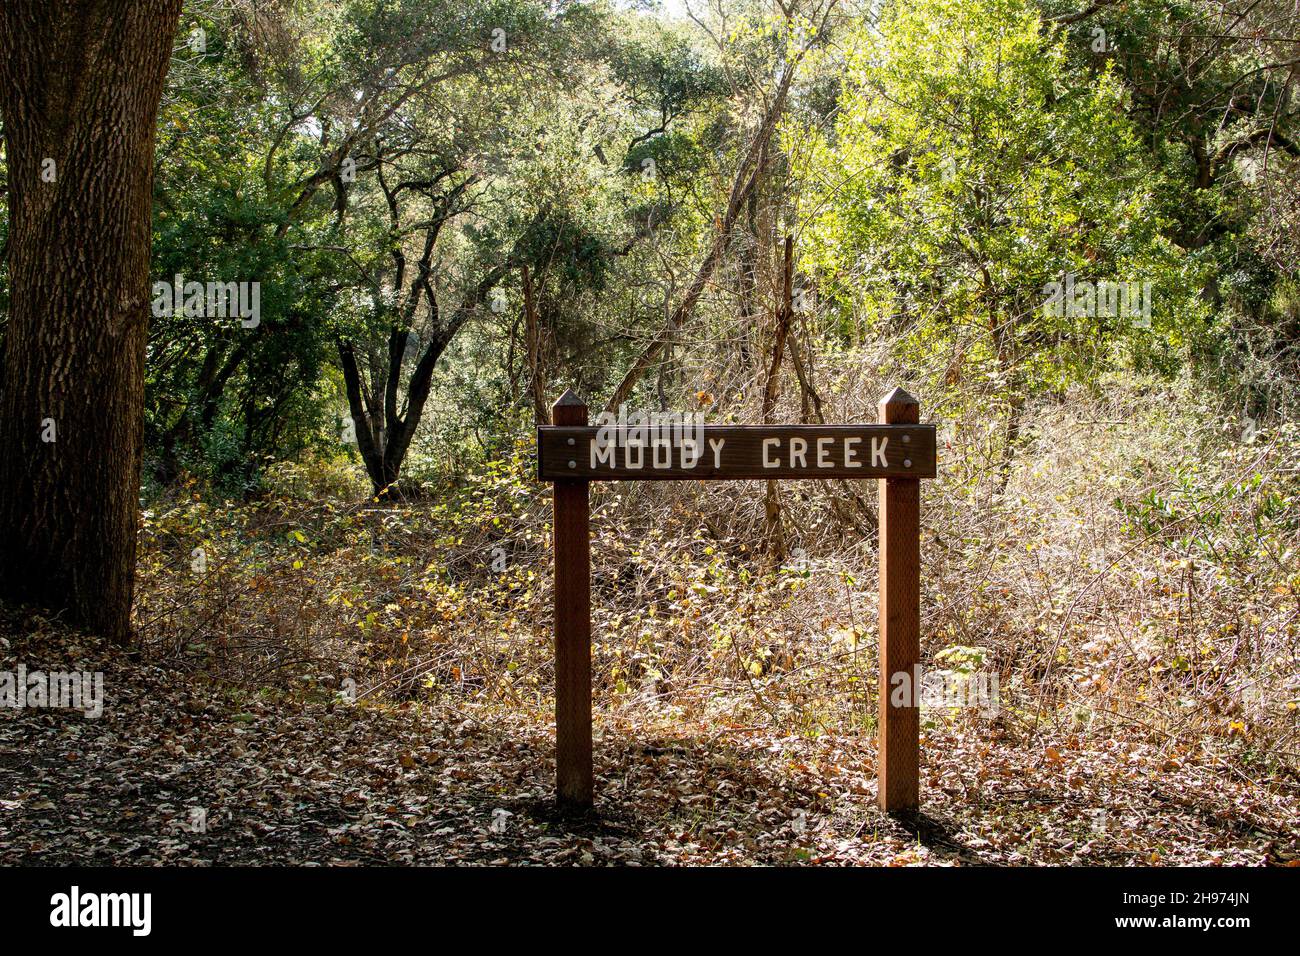 Panneau de sentier en bois pour « Woody Creek » dans les bois se défrichant en automne avec des feuilles d'automne sur le sol et une lumière du soleil. Banque D'Images